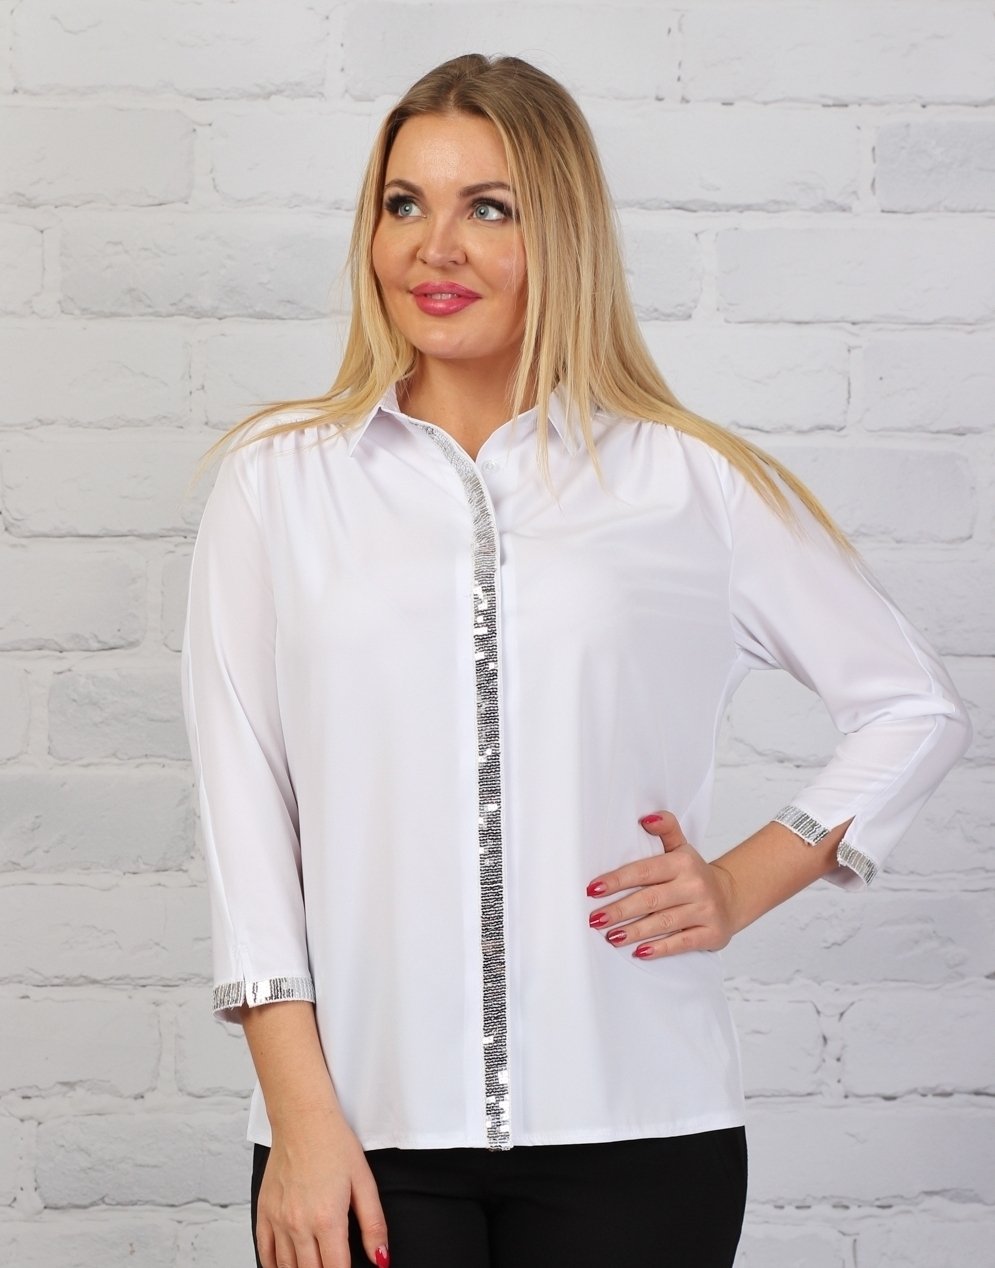 Блузки недорого интернет магазин. Фабрика Алона блузки. Блузки на валберис. Белая блузка. Блуза белая.